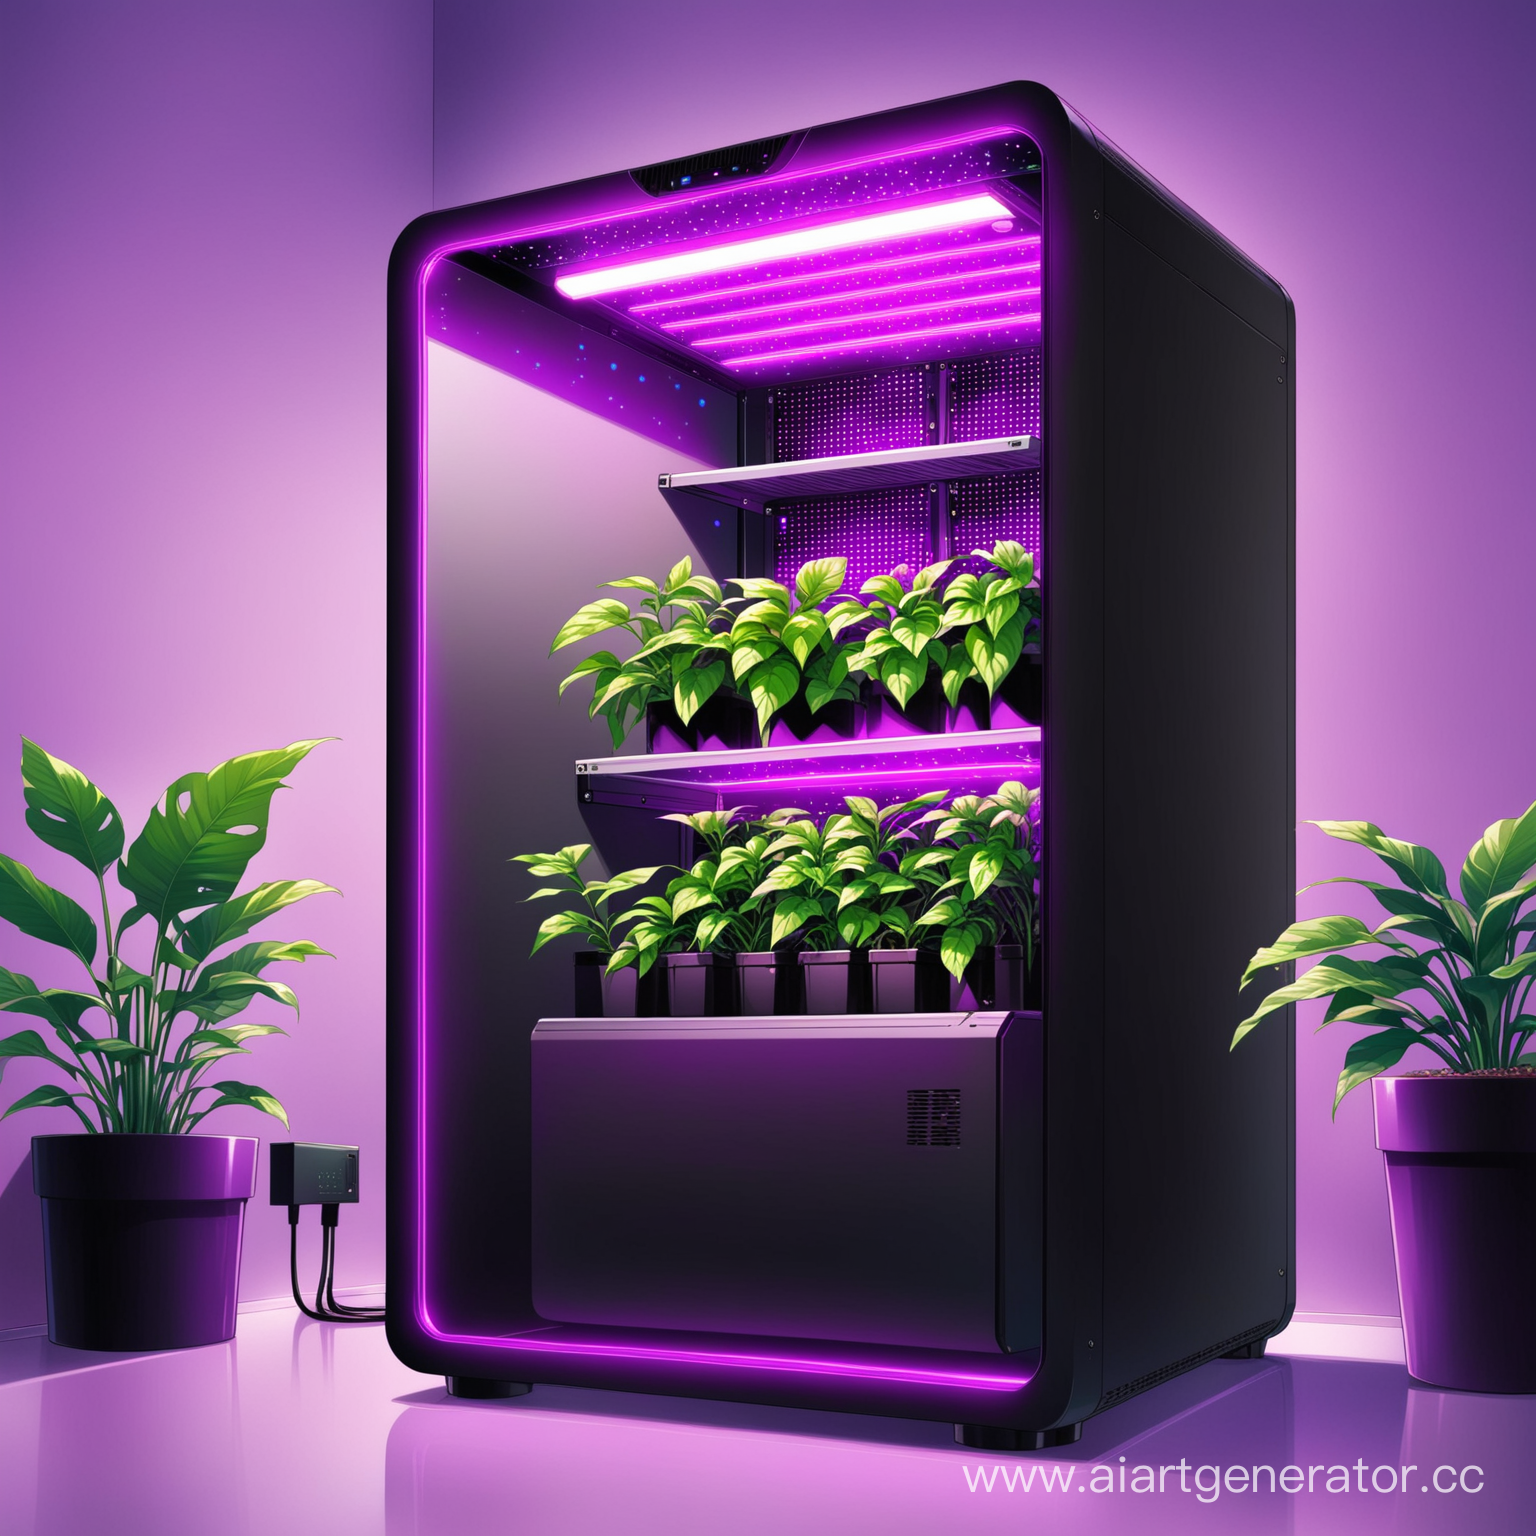 Гроубокс в корпусе компьютера с растениями. Картинка в фиолетово-черном цвете